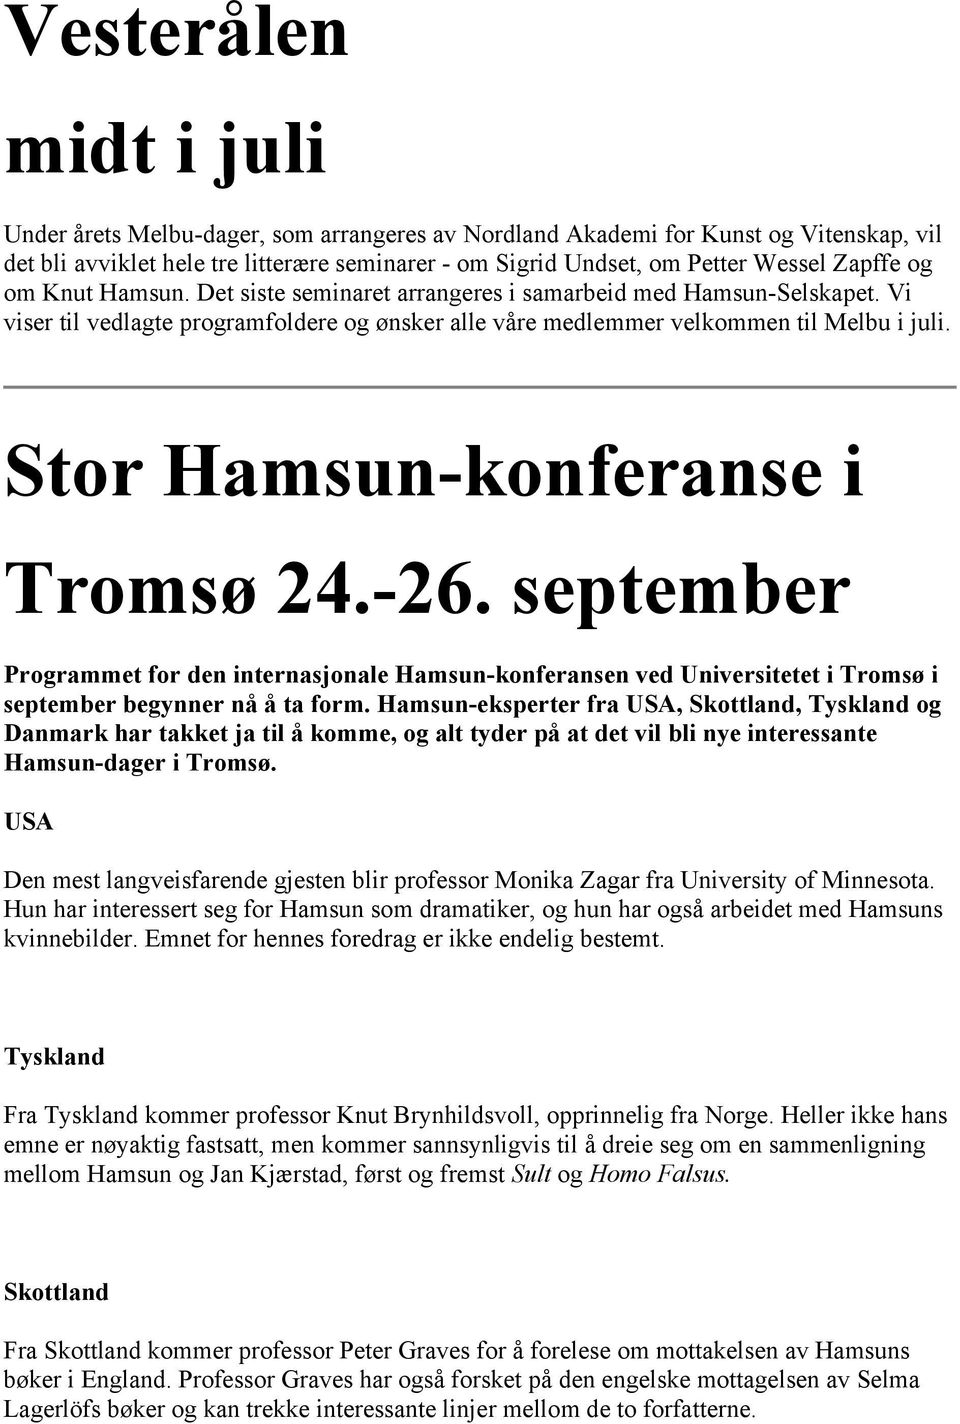 Stor Hamsun-konferanse i Tromsø 24.-26. september Programmet for den internasjonale Hamsun-konferansen ved Universitetet i Tromsø i september begynner nå å ta form.